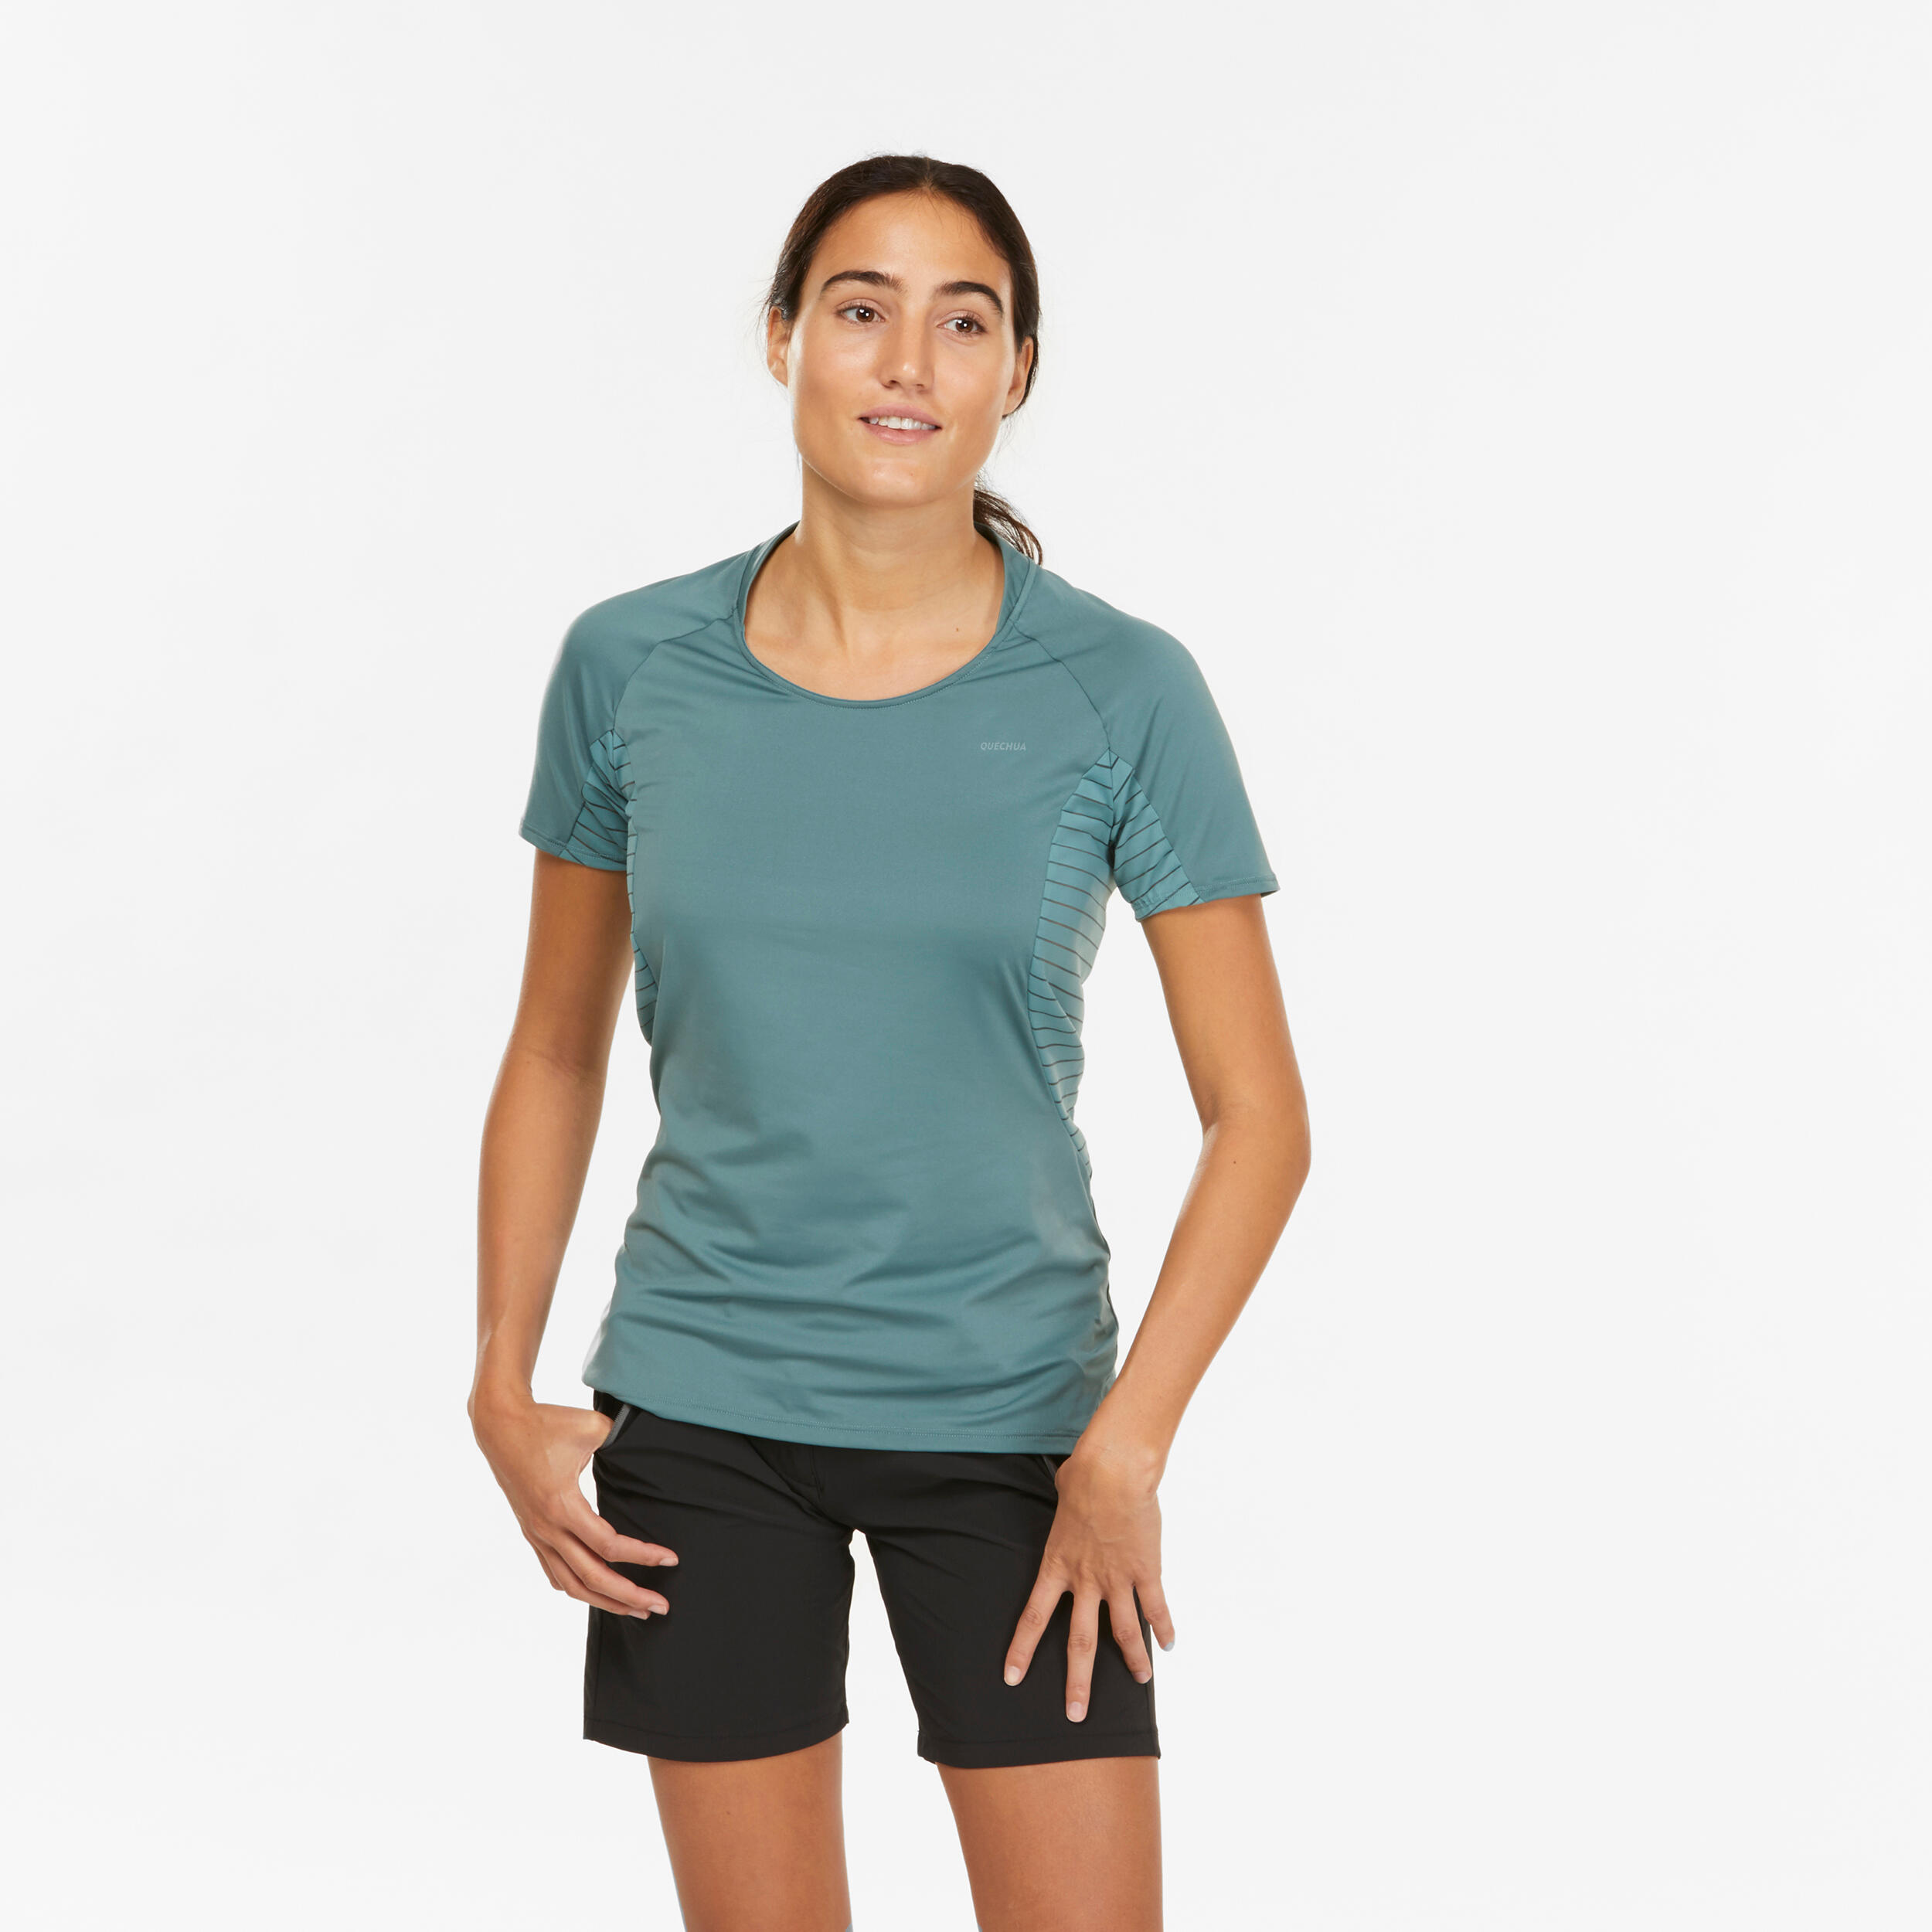 Women’s Hiking T-Shirt - MH 500 - QUECHUA